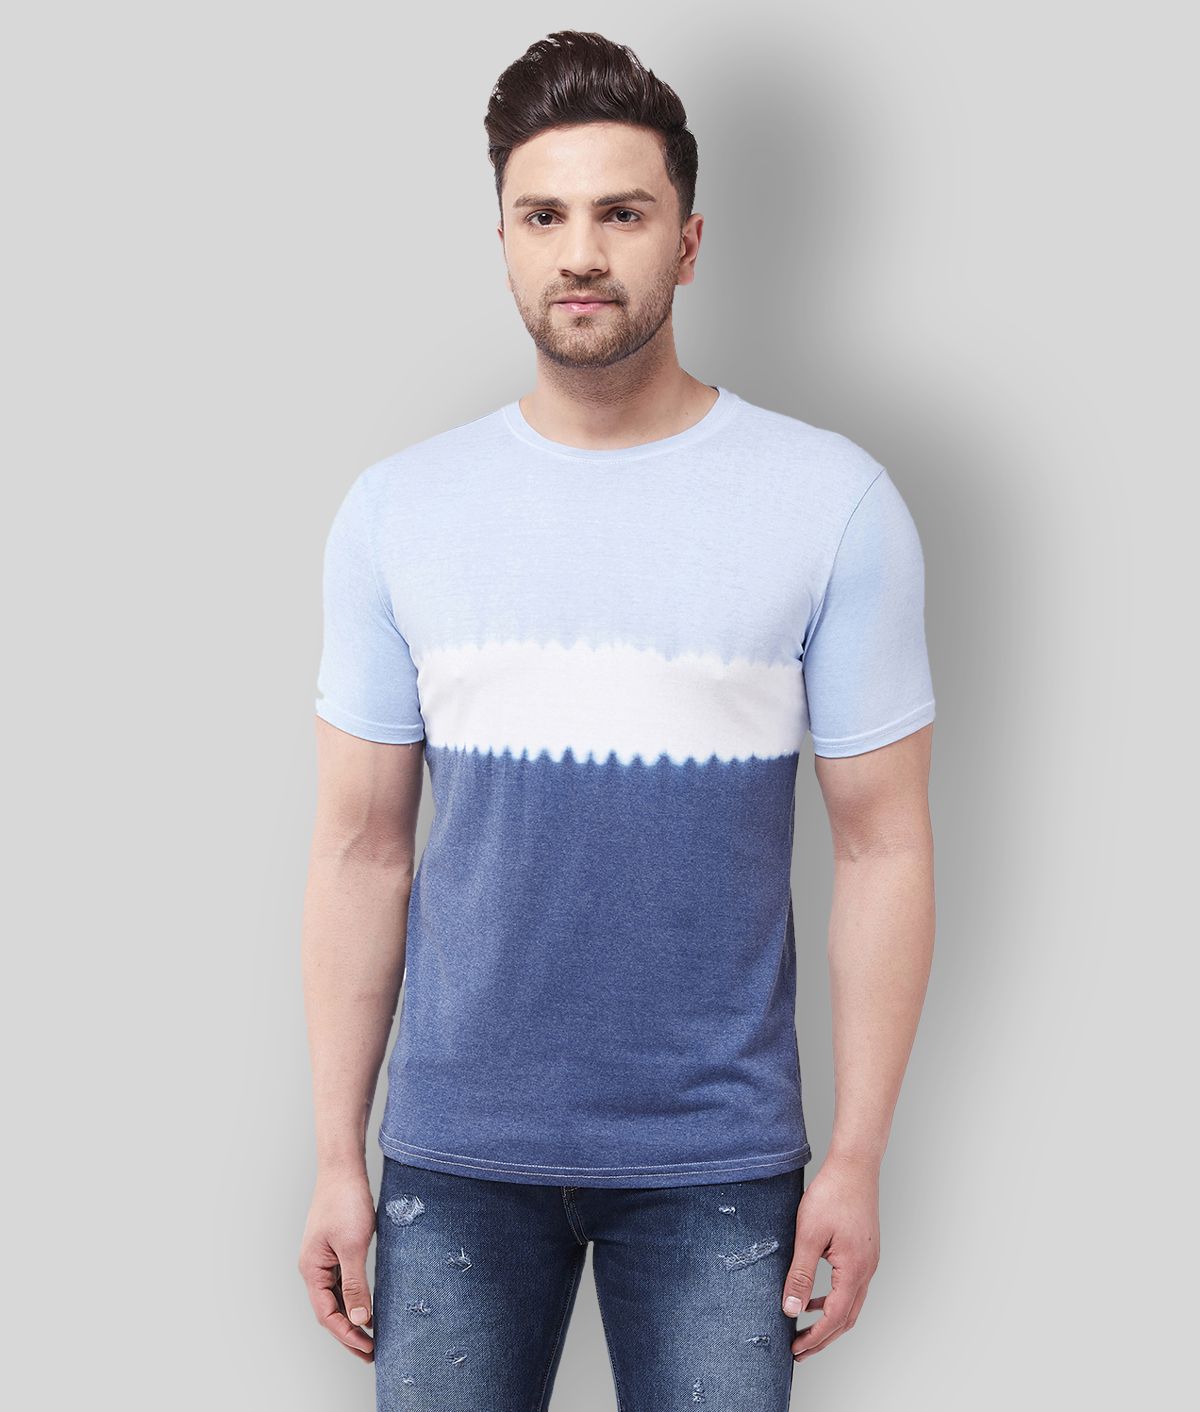 Gritstones - Blue Cotton Blend Regular Fit Men's T-Shirt ( Pack of 1 )